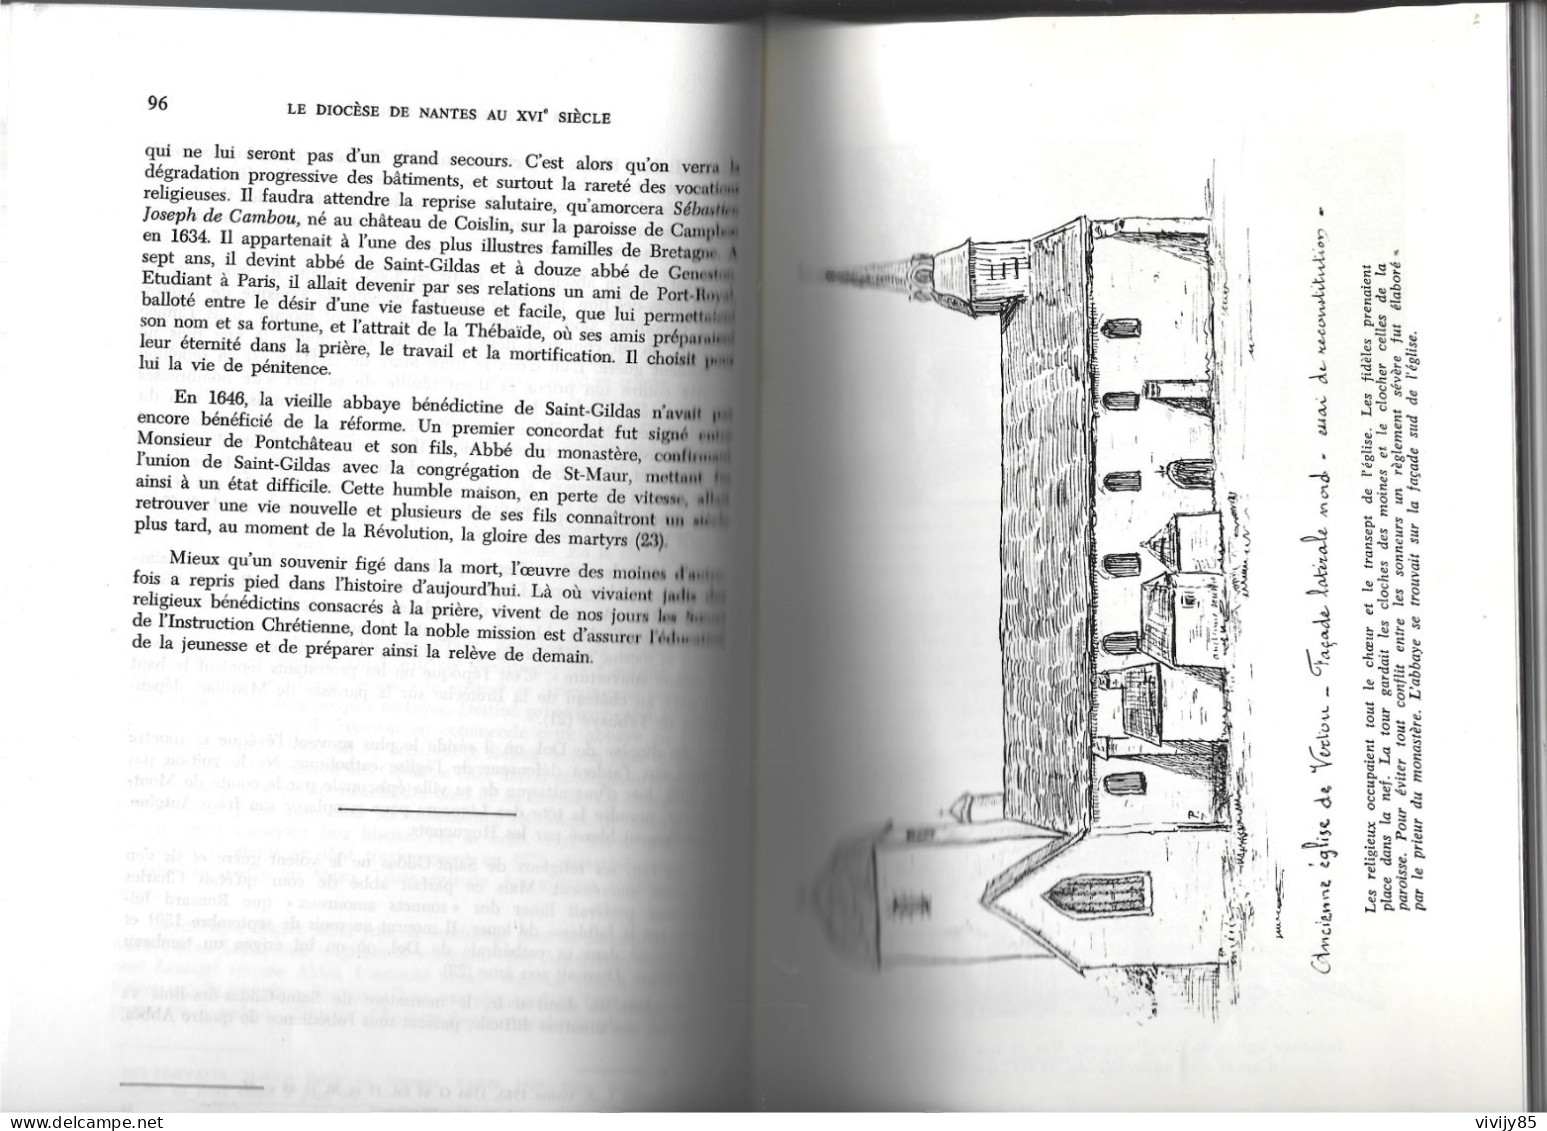 44 - NANTES - Livre " le Diocèse au XVI è siècle 1500-1600 " - 1976